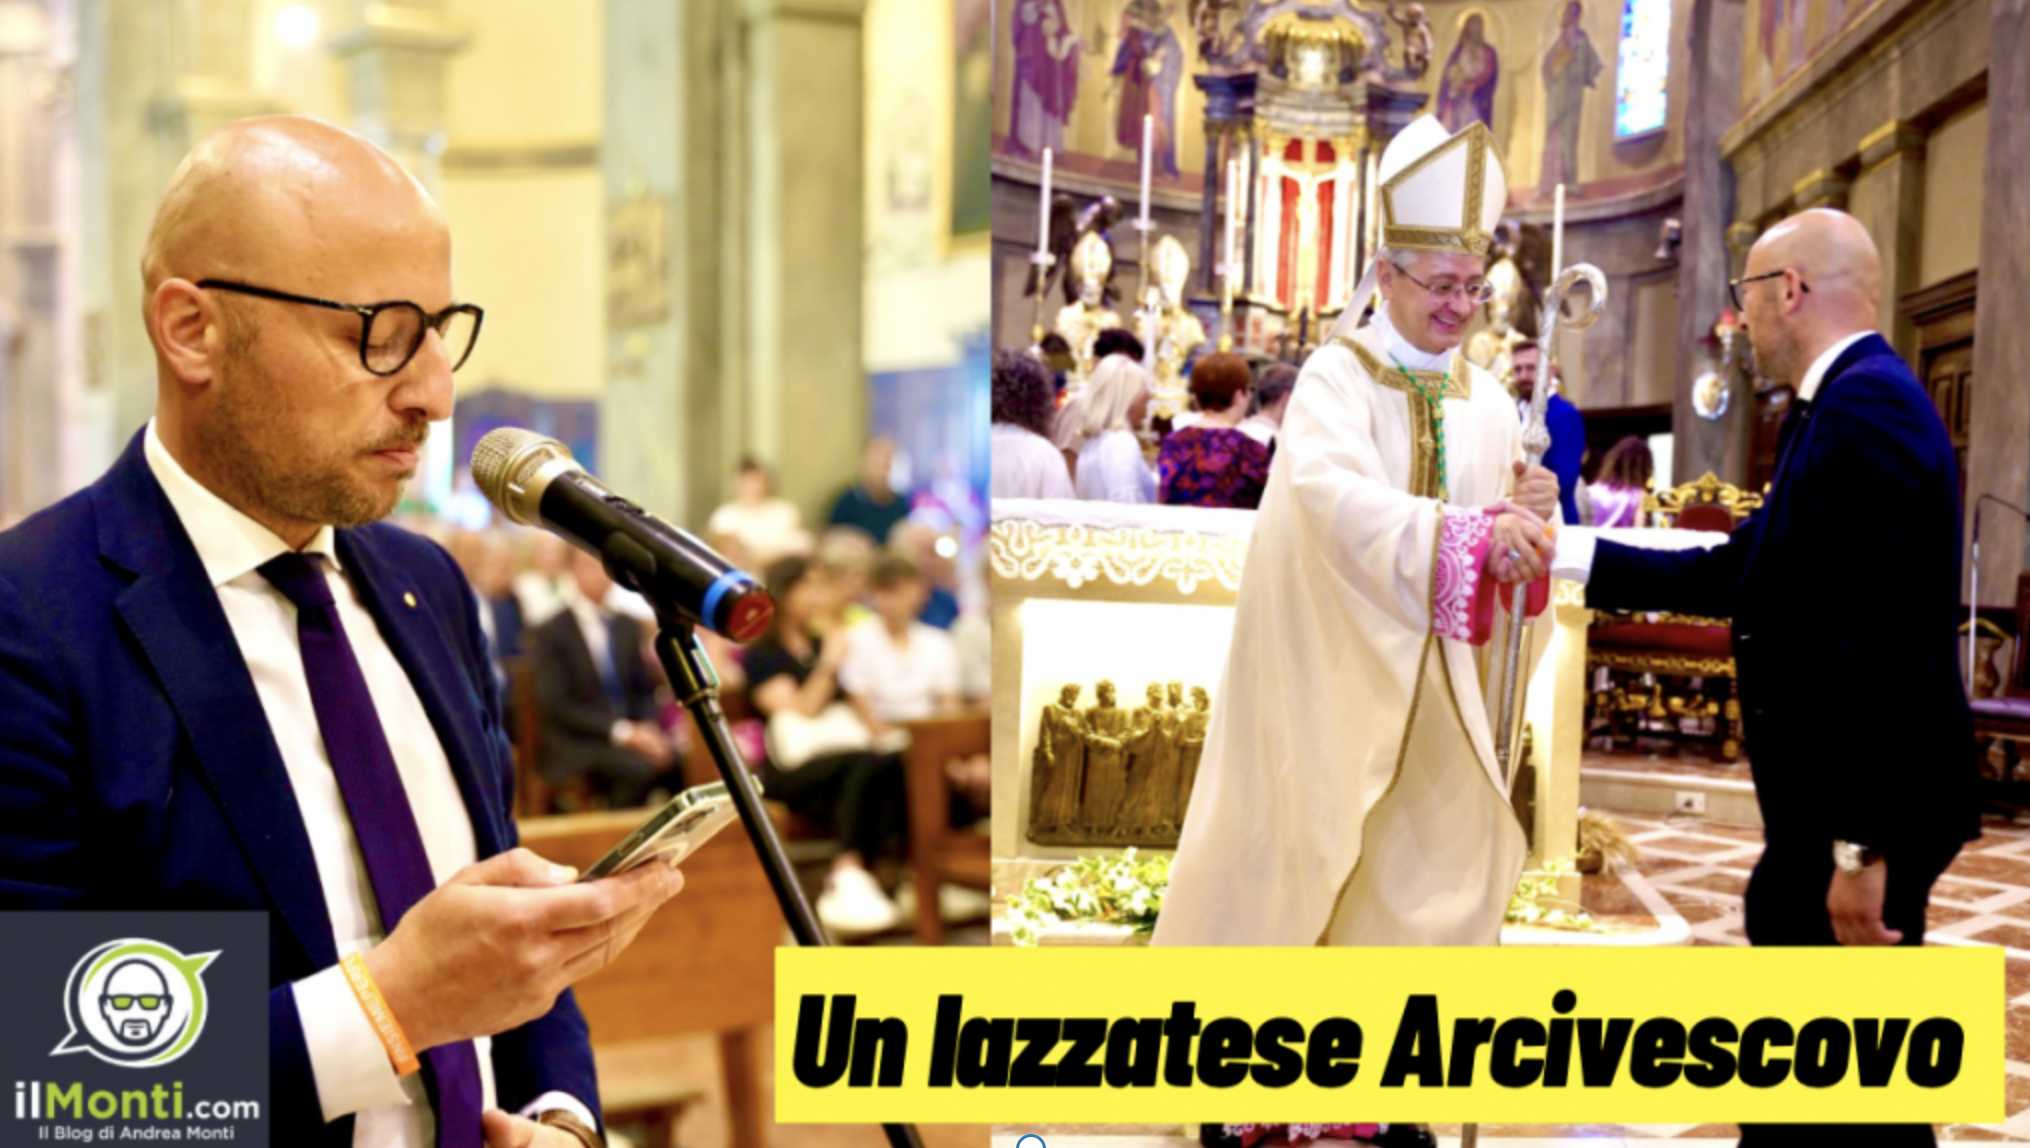 Il saluto di Lazzate al suo concittadino nominato Arcivescovo